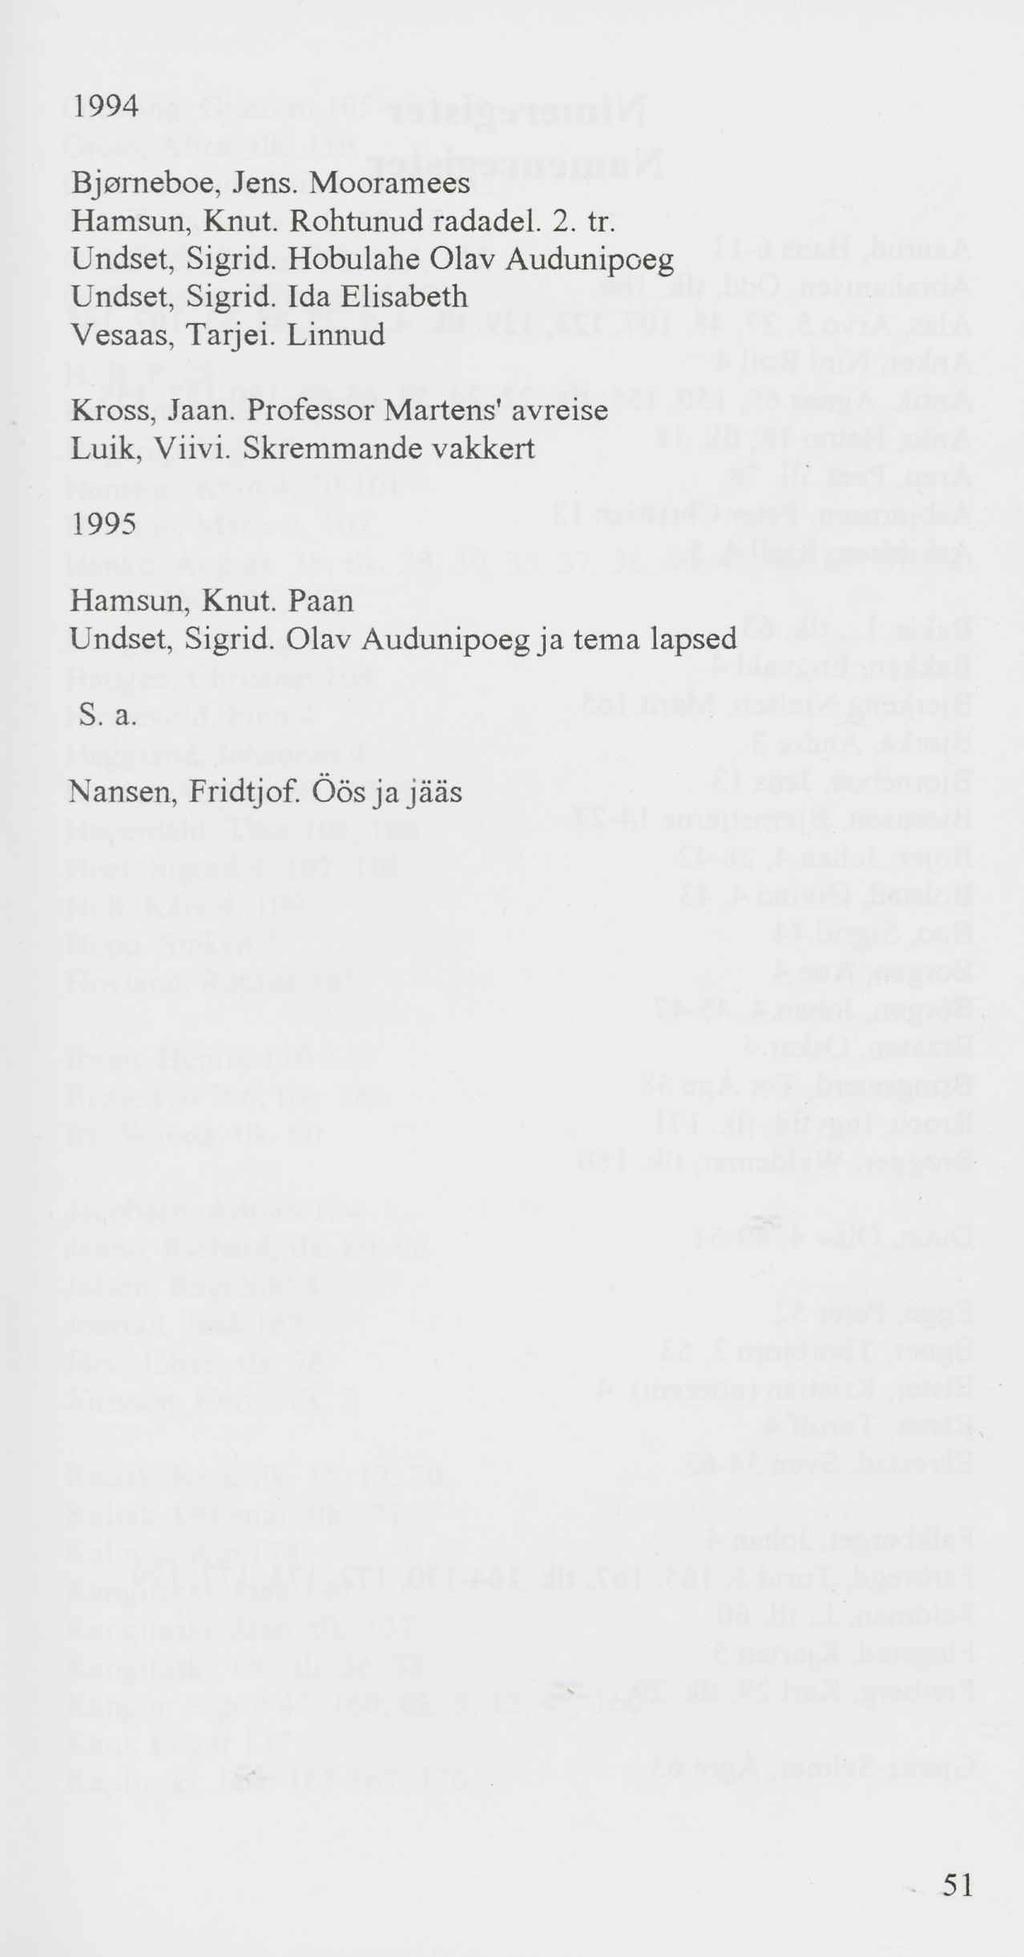 1994 Bjorneboe, Jens. Mooramees Hamsun, Knut. Rohtunud radadel. 2. tr. Undset, Sigrid. Hobulahe Olav Audunipoeg Undset, Sigrid. Ida Elisabeth Vesaas, Tarjei.